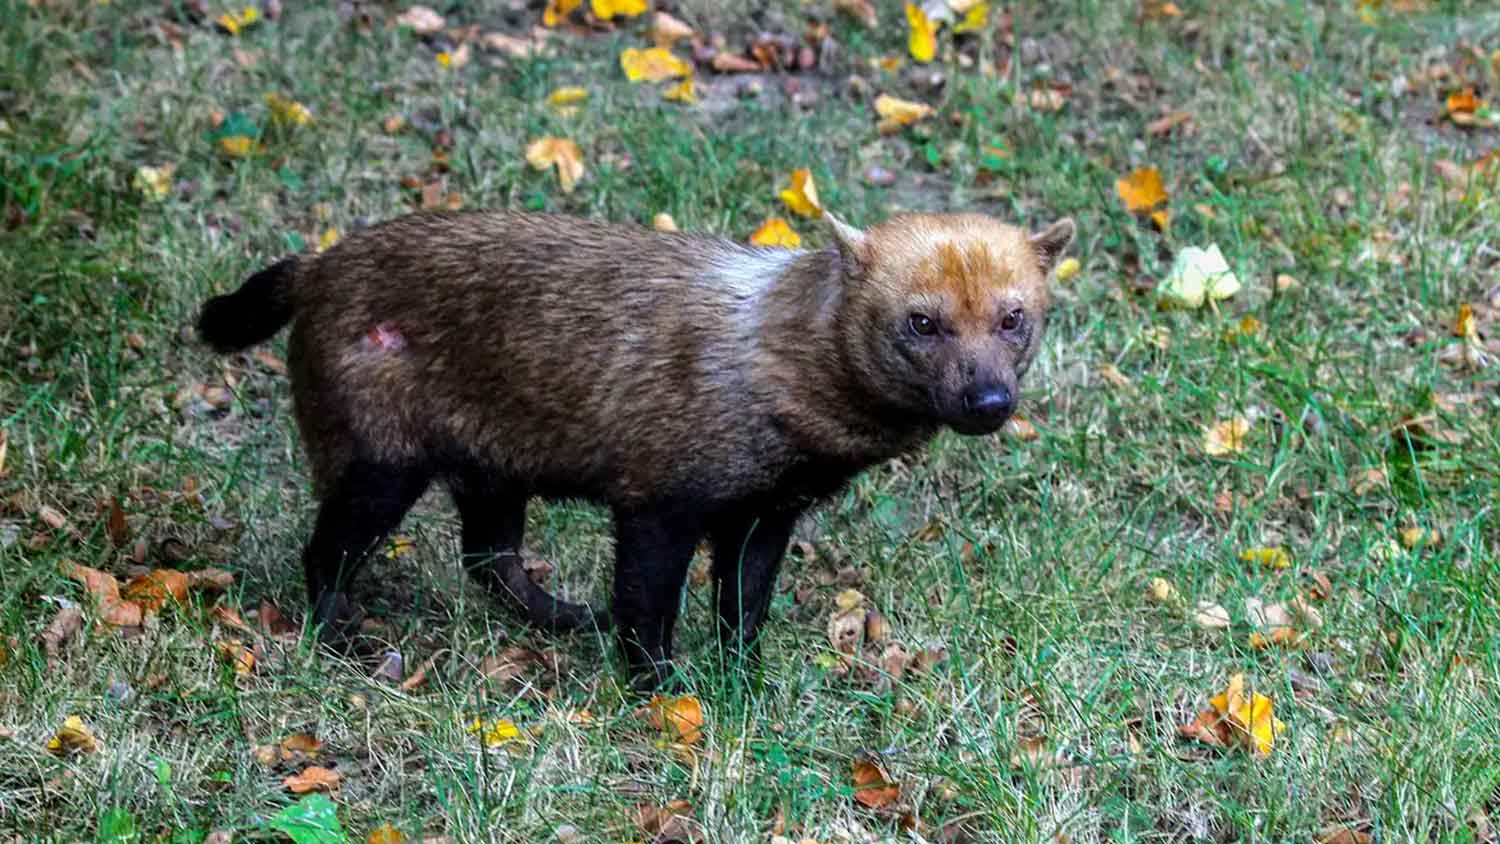 Ameaçado de extinção, cachorro-vinagre é flagrado em parque no Amapá | Mundo & História